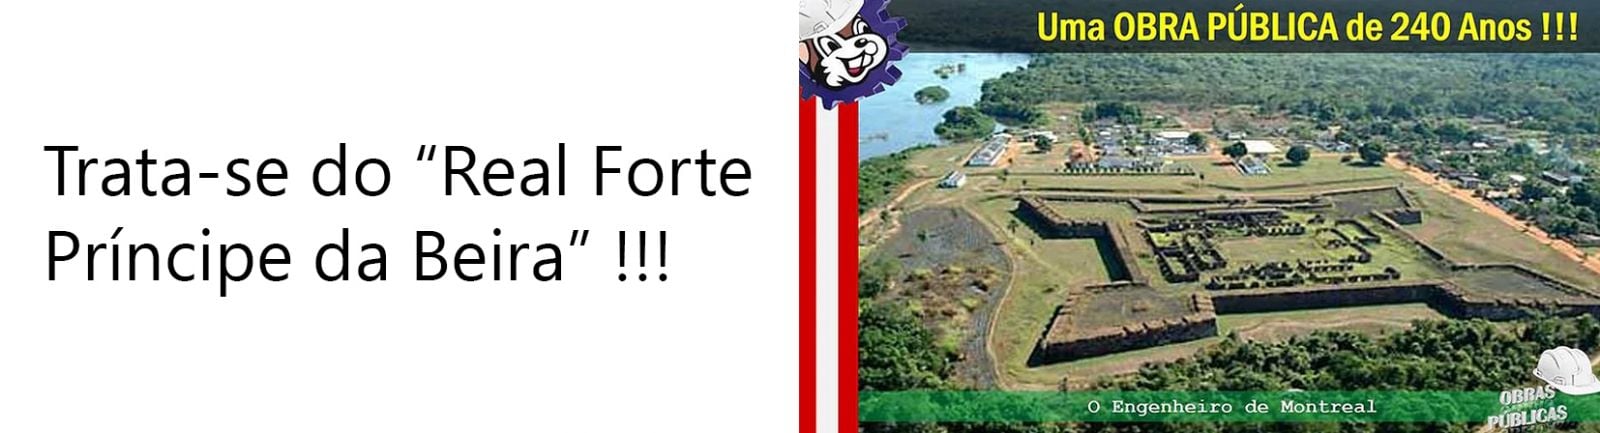 UMA OBRA PÚBLICA DE 240 ANOS!!! - News Rondônia